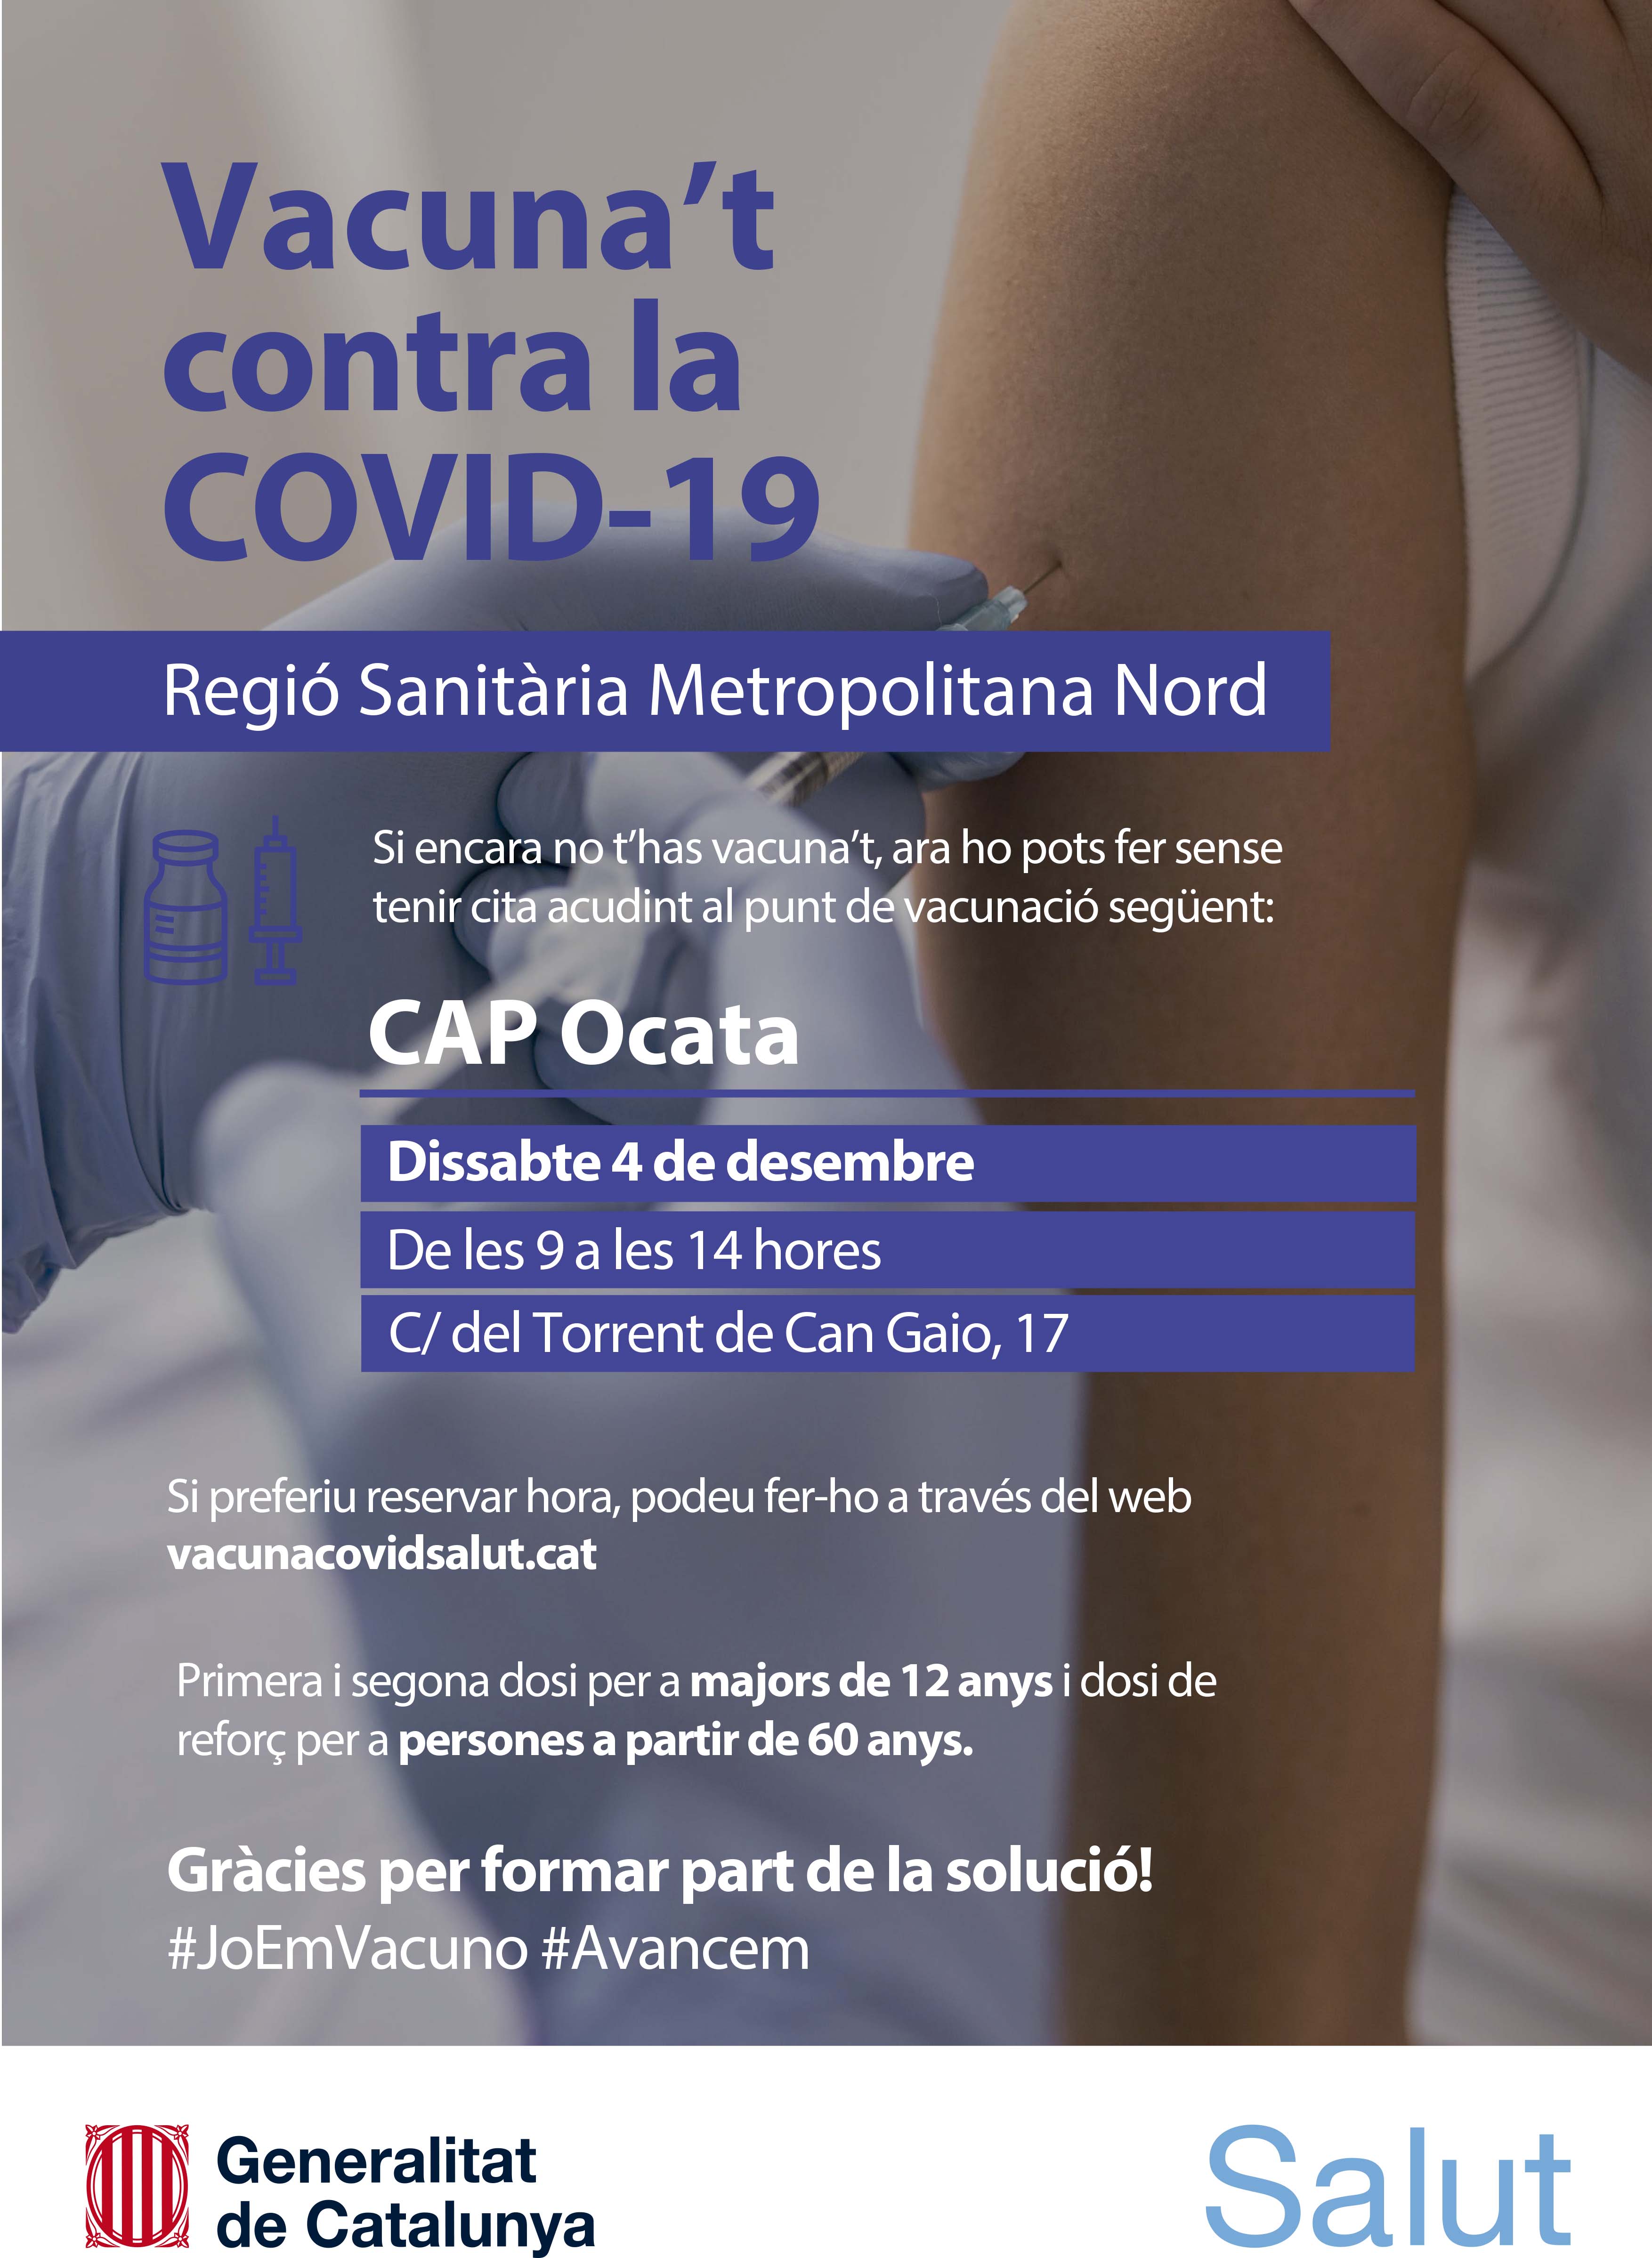 El CAP Ocata organitza una jornada de vacunació contra la COVID-19 el dissabte 4 de desembre 